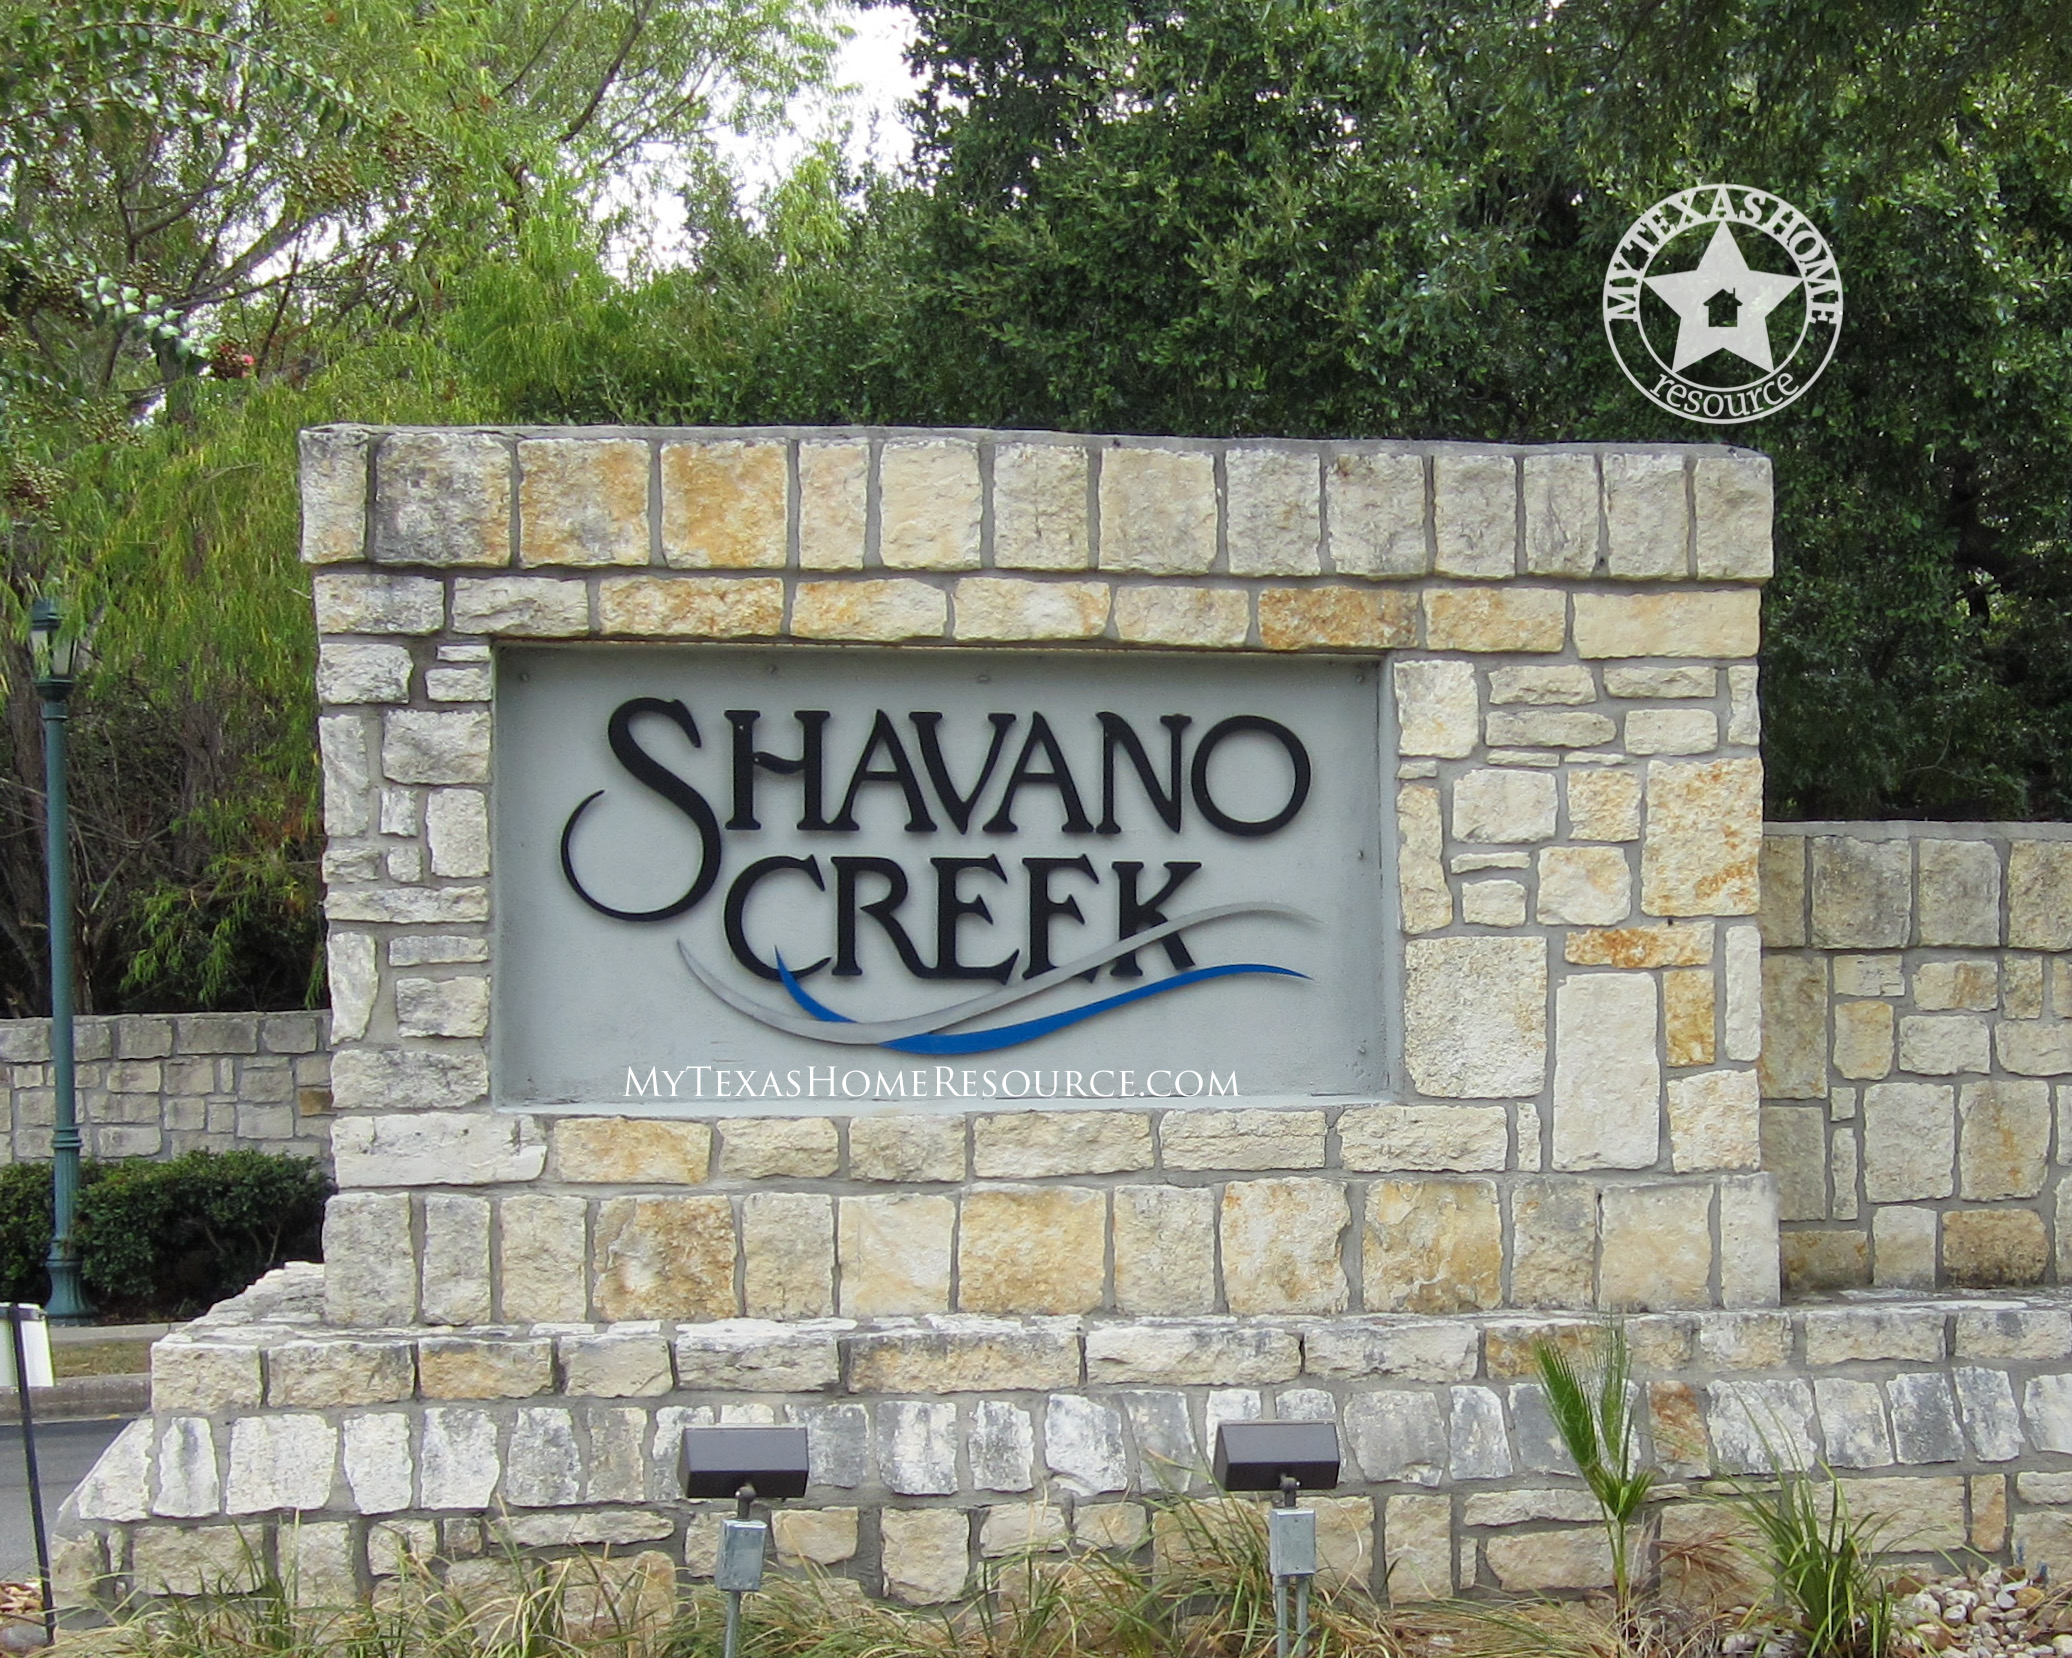 德克萨斯州网上正规的彩票网站的Shavano溪社区